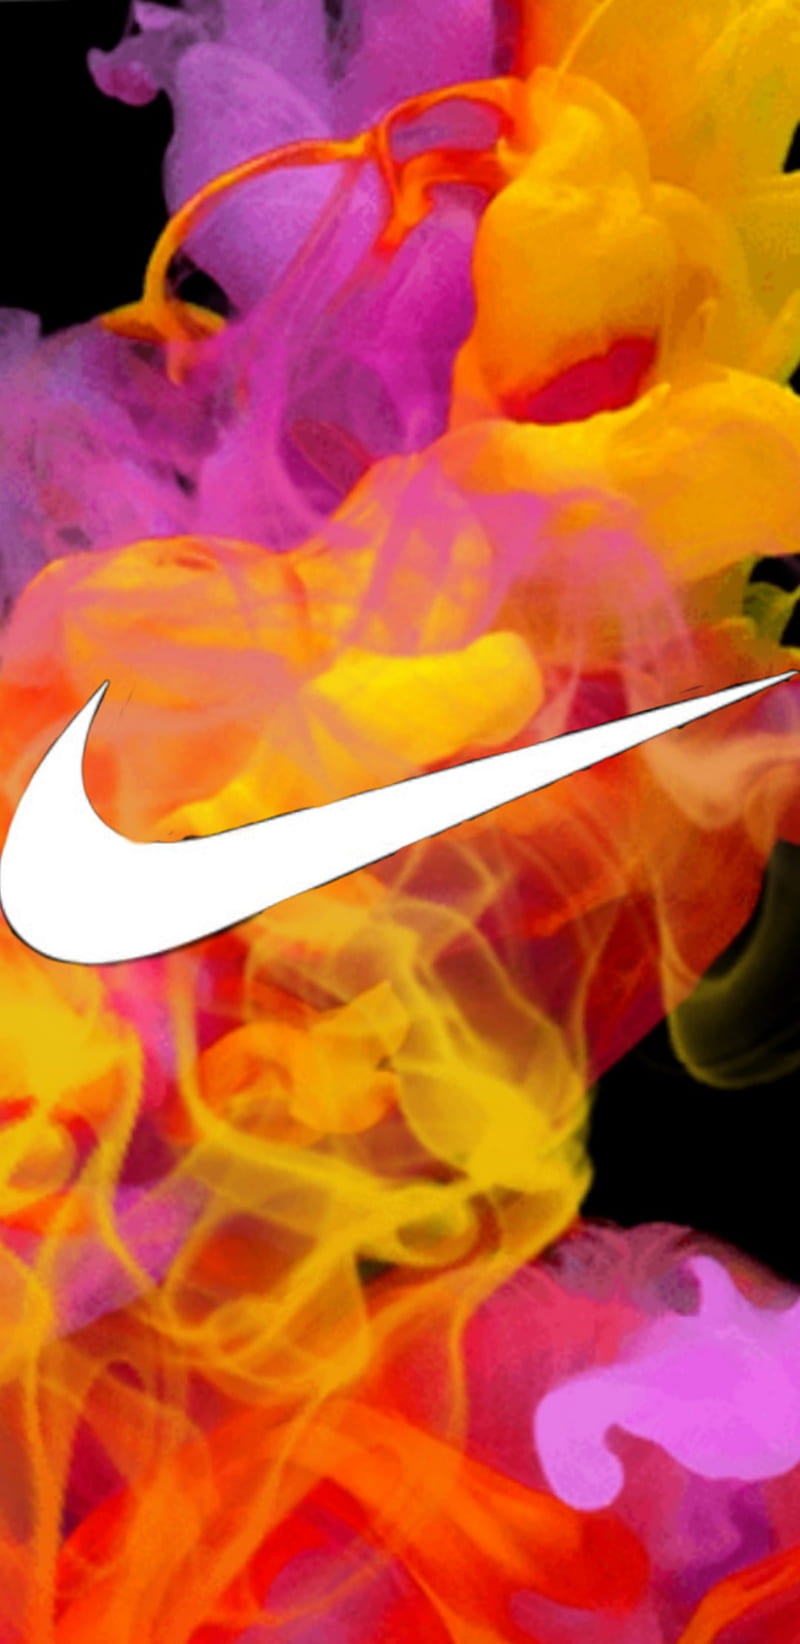 panel Medicina Soportar Nike de colores, marca, explosión, rosado, rojo, naranja, amarillo, Fondo  de pantalla de teléfono HD | Peakpx